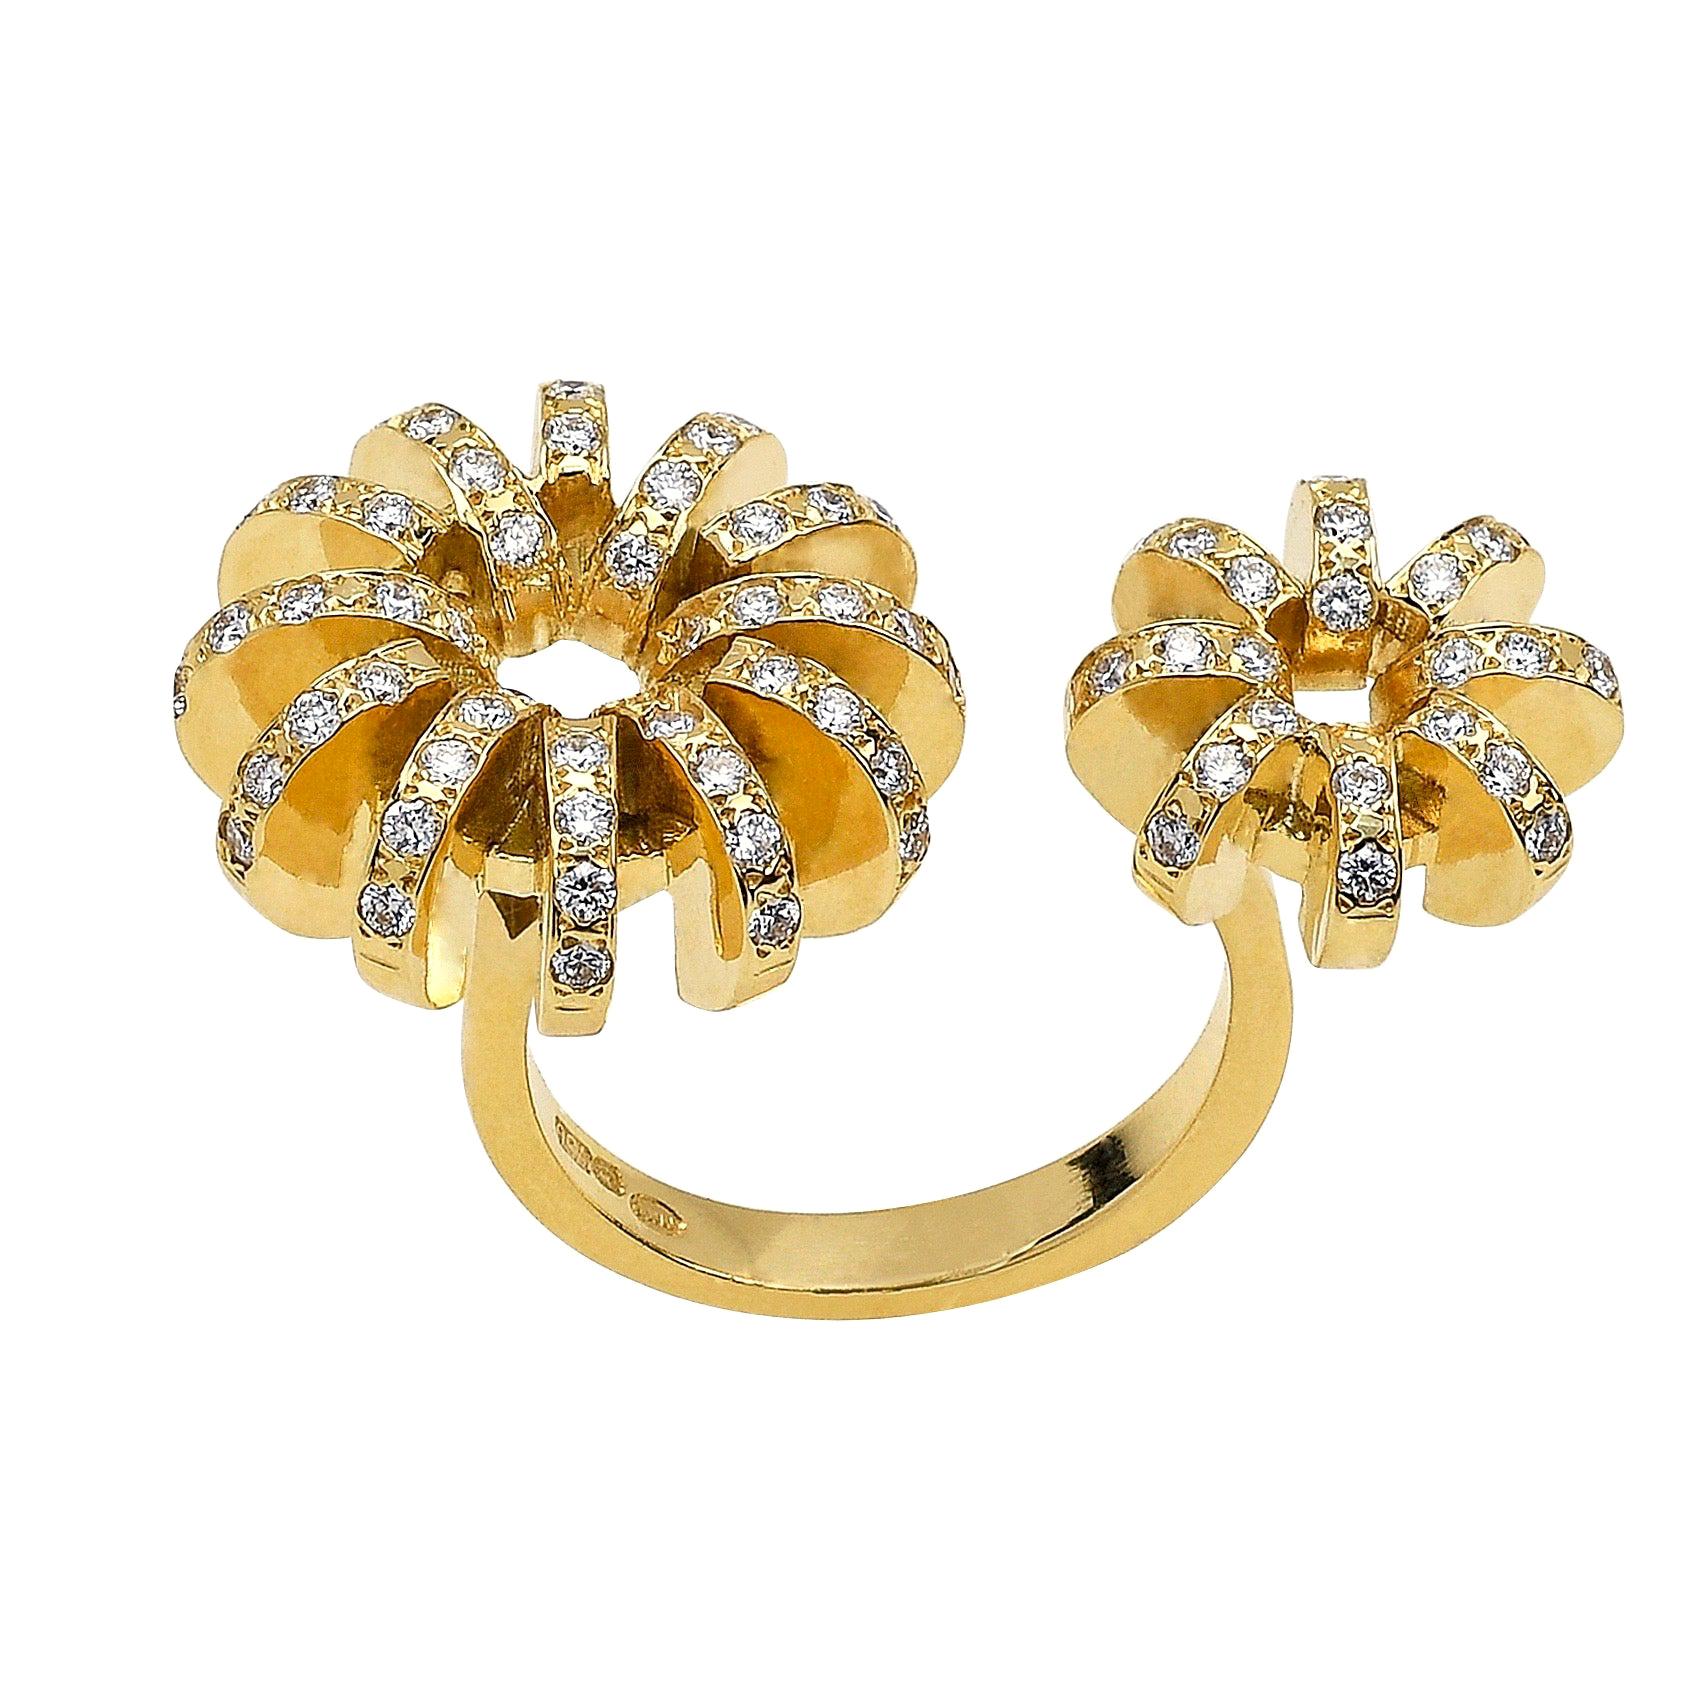 Zeitgenössischer Ring aus 18 Karat Gelbgold mit weißer Diamantblume zwischen den Fingern